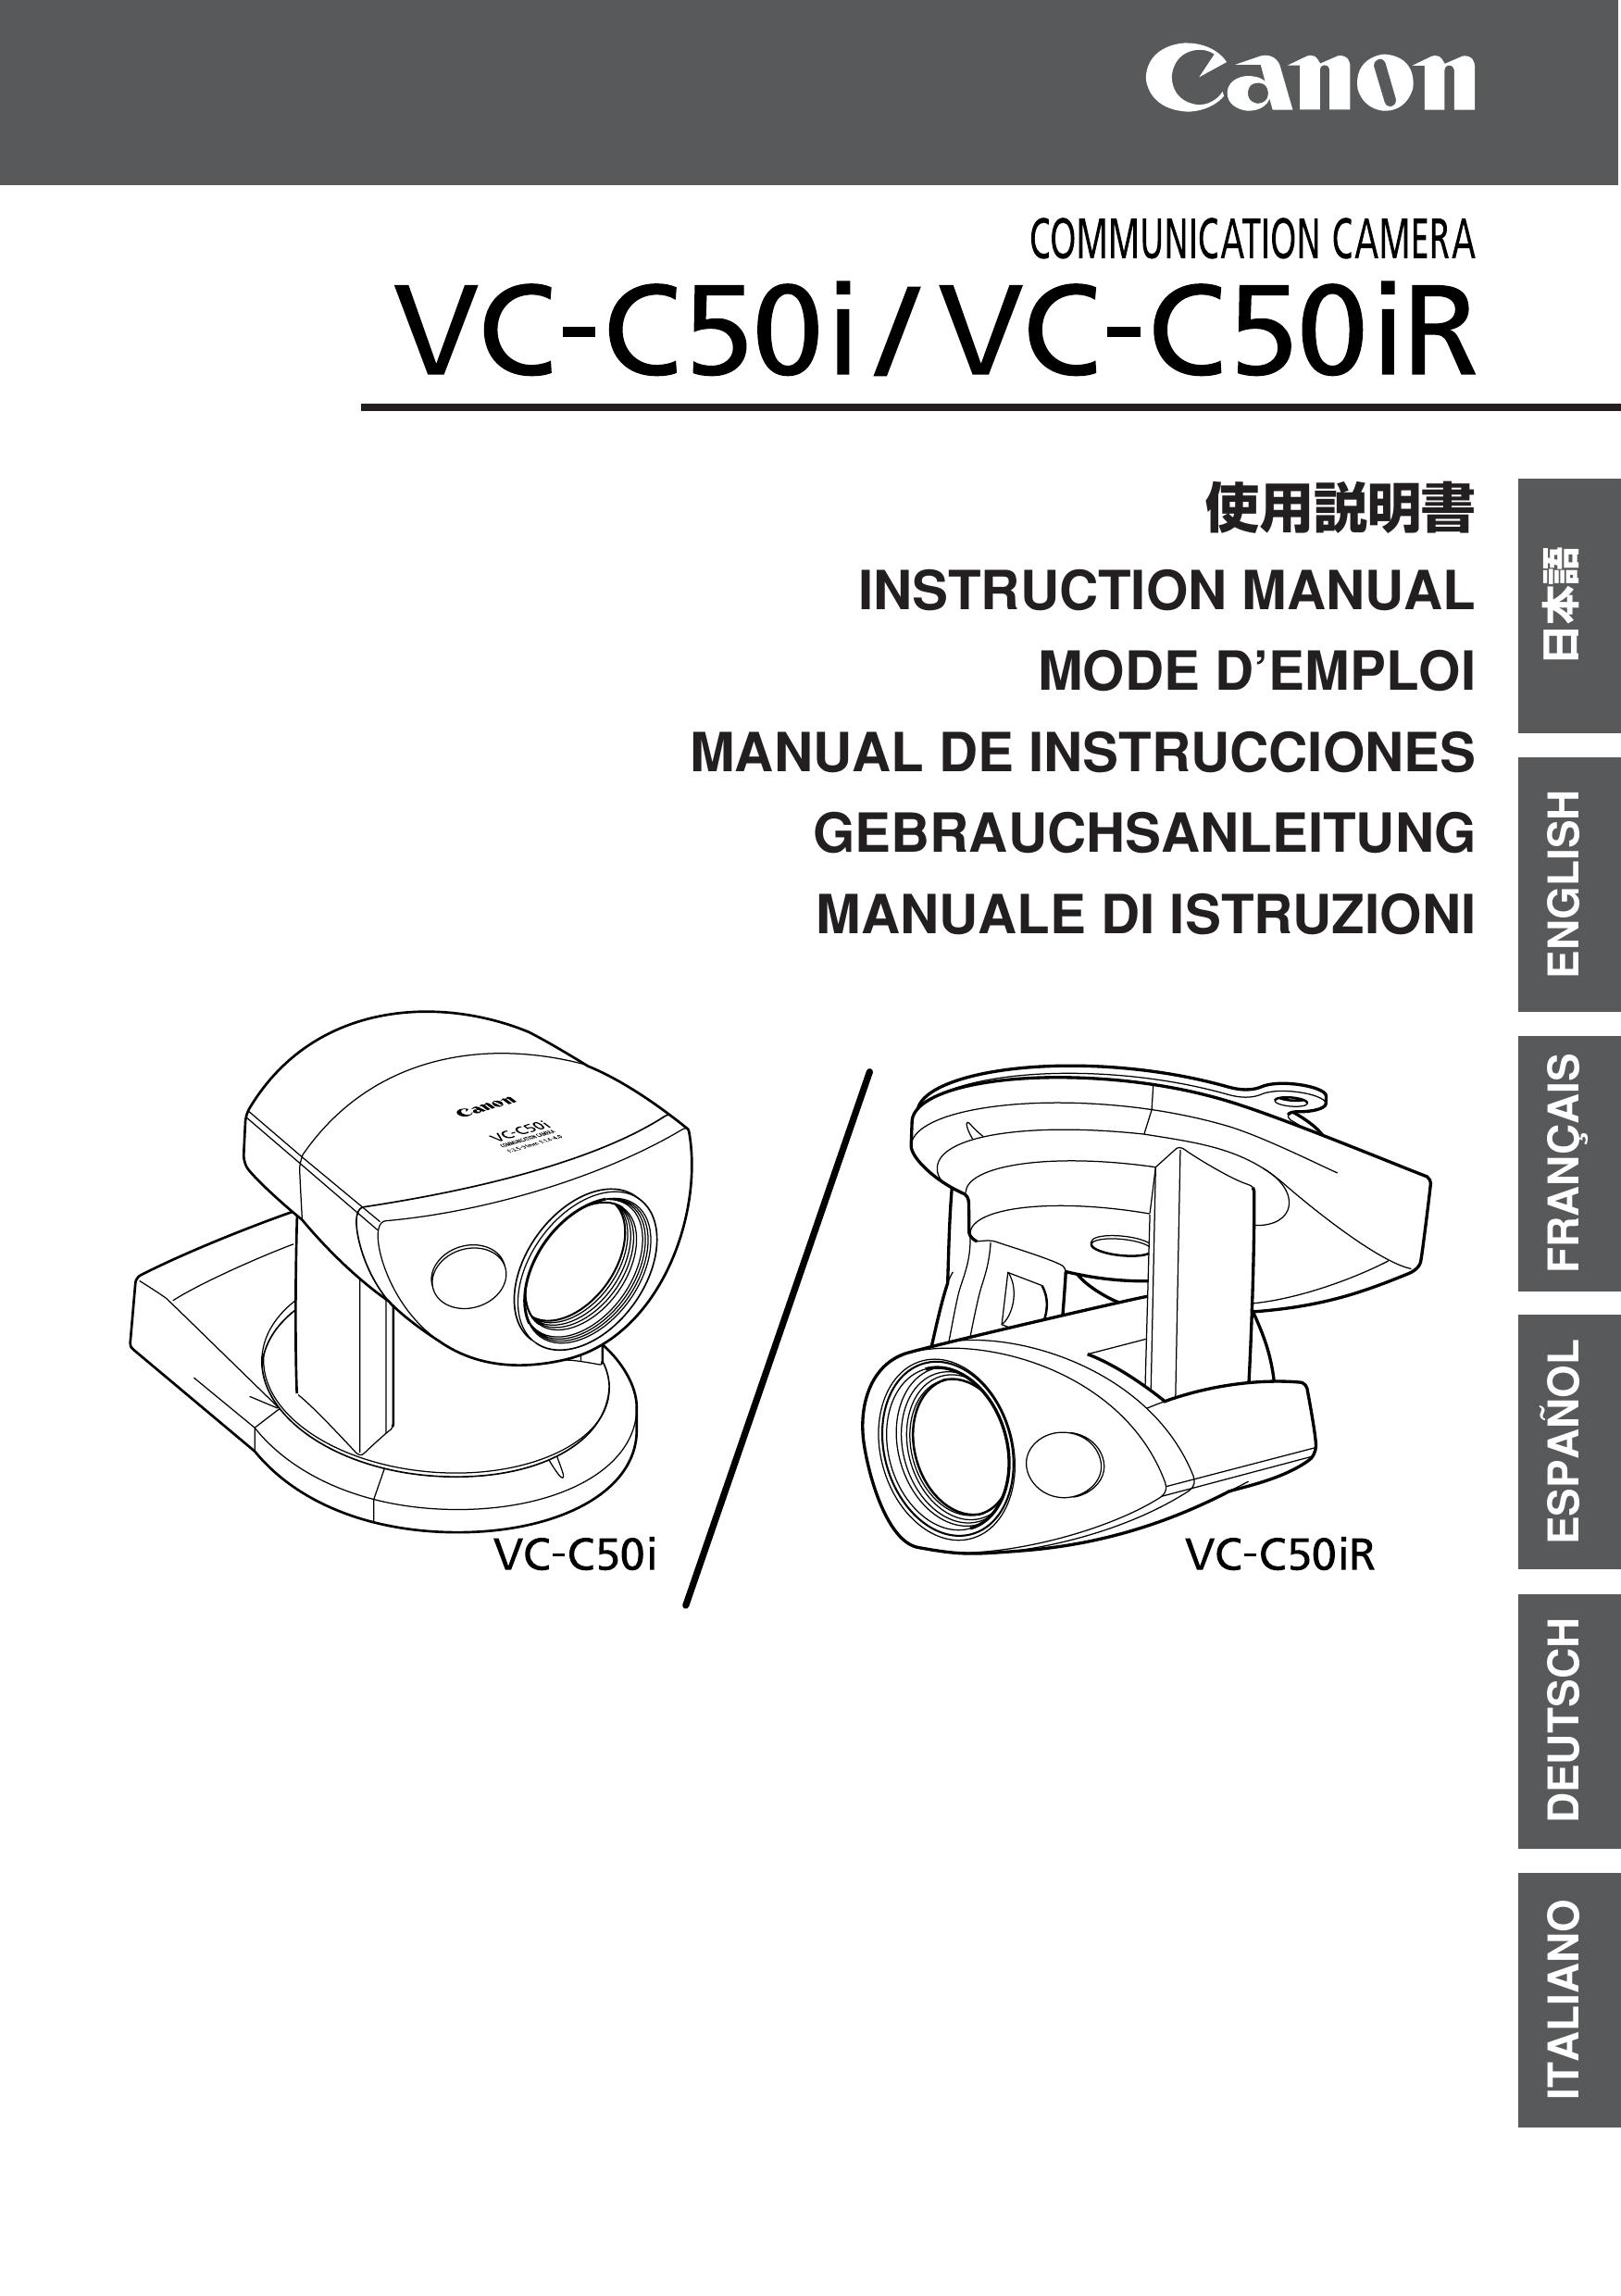 Canon VC-C50iR Security Camera User Manual